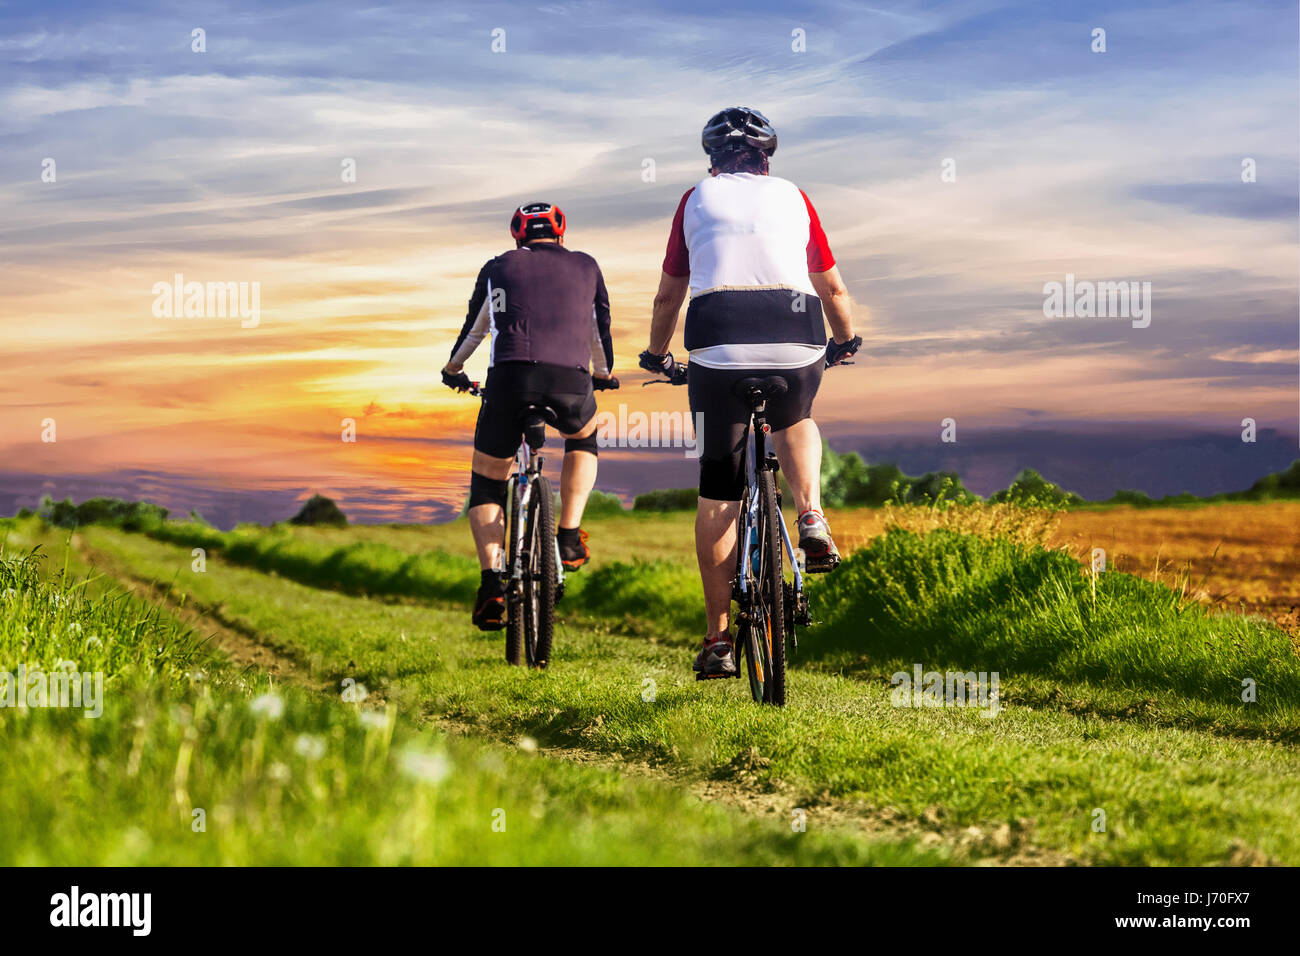 Das Paar fährt mit dem Fahrrad auf dem Feldweg Landschaft Rückansicht, Sonnenuntergang, zwei Menschen Radfahren auf der Landstraße, Land, gesunde Lebensweise Tschechische Republik Stockfoto